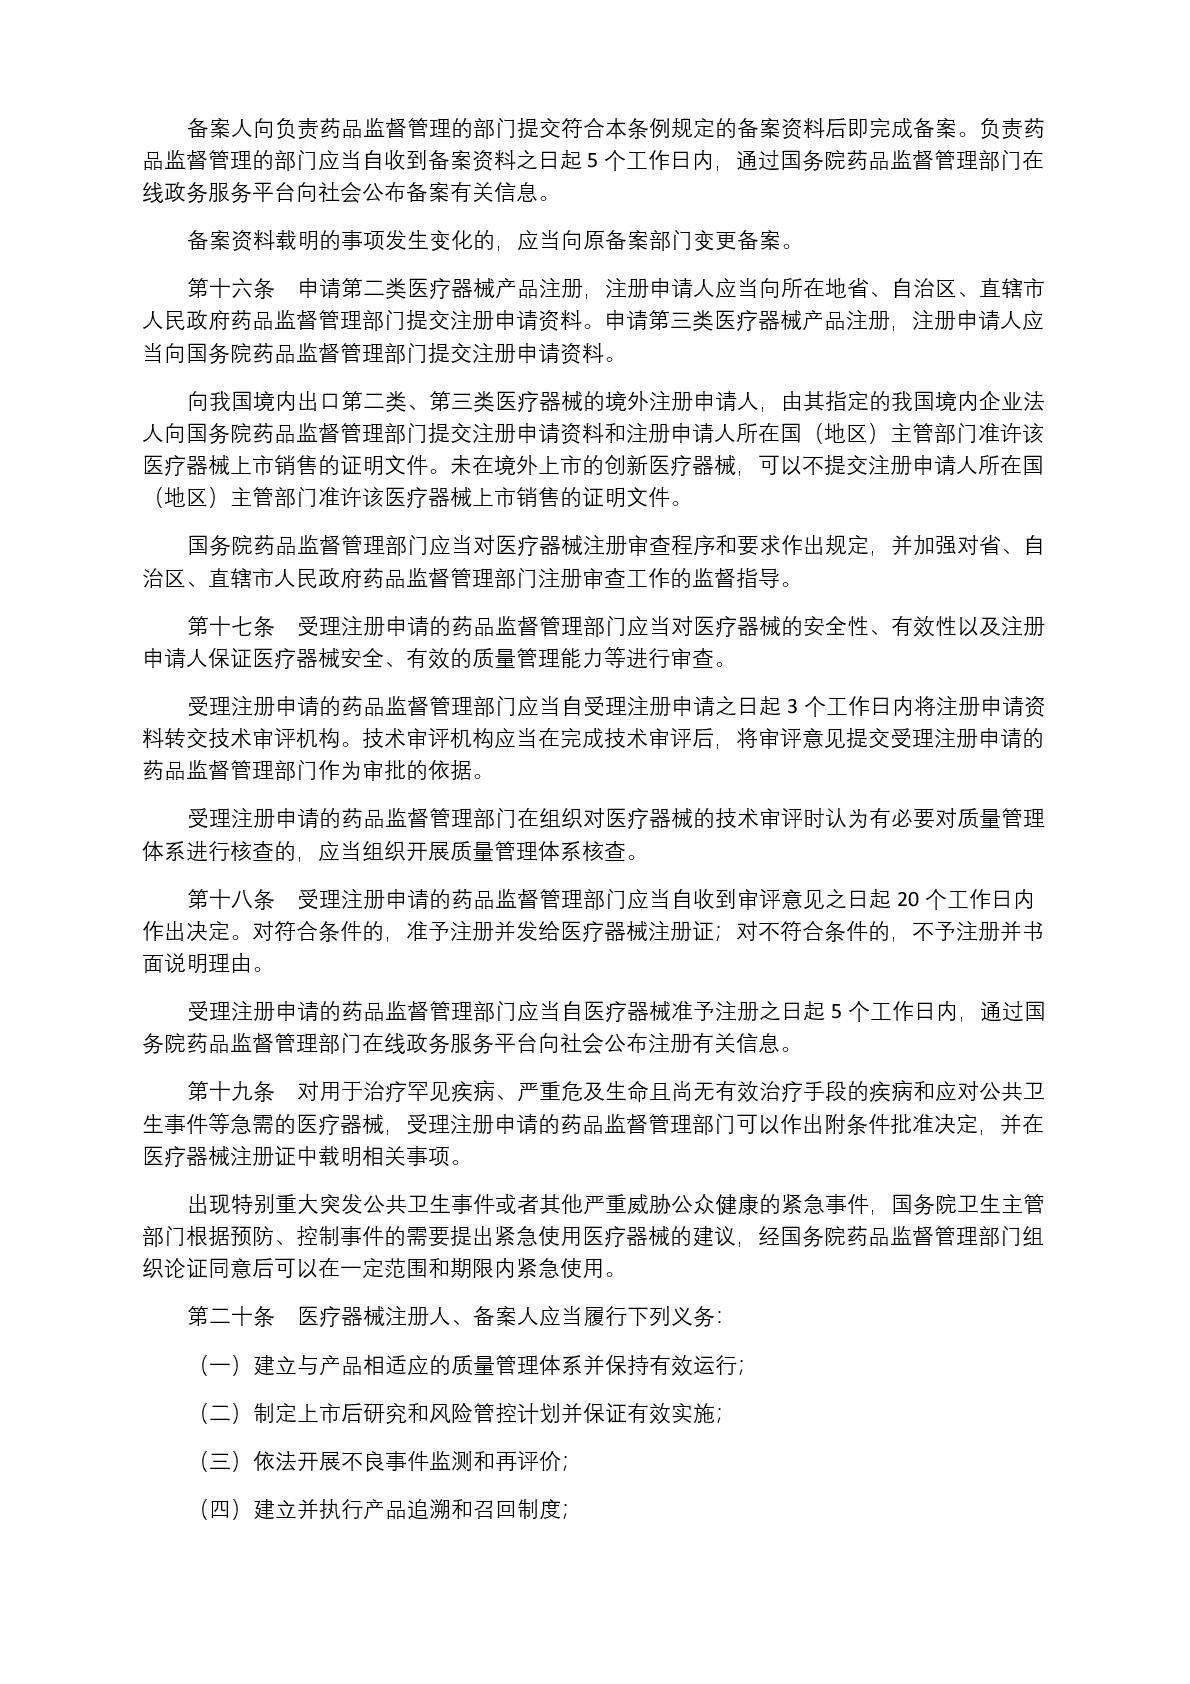 中华人民共和国国务院令第739号(1) (1)-004.jpg